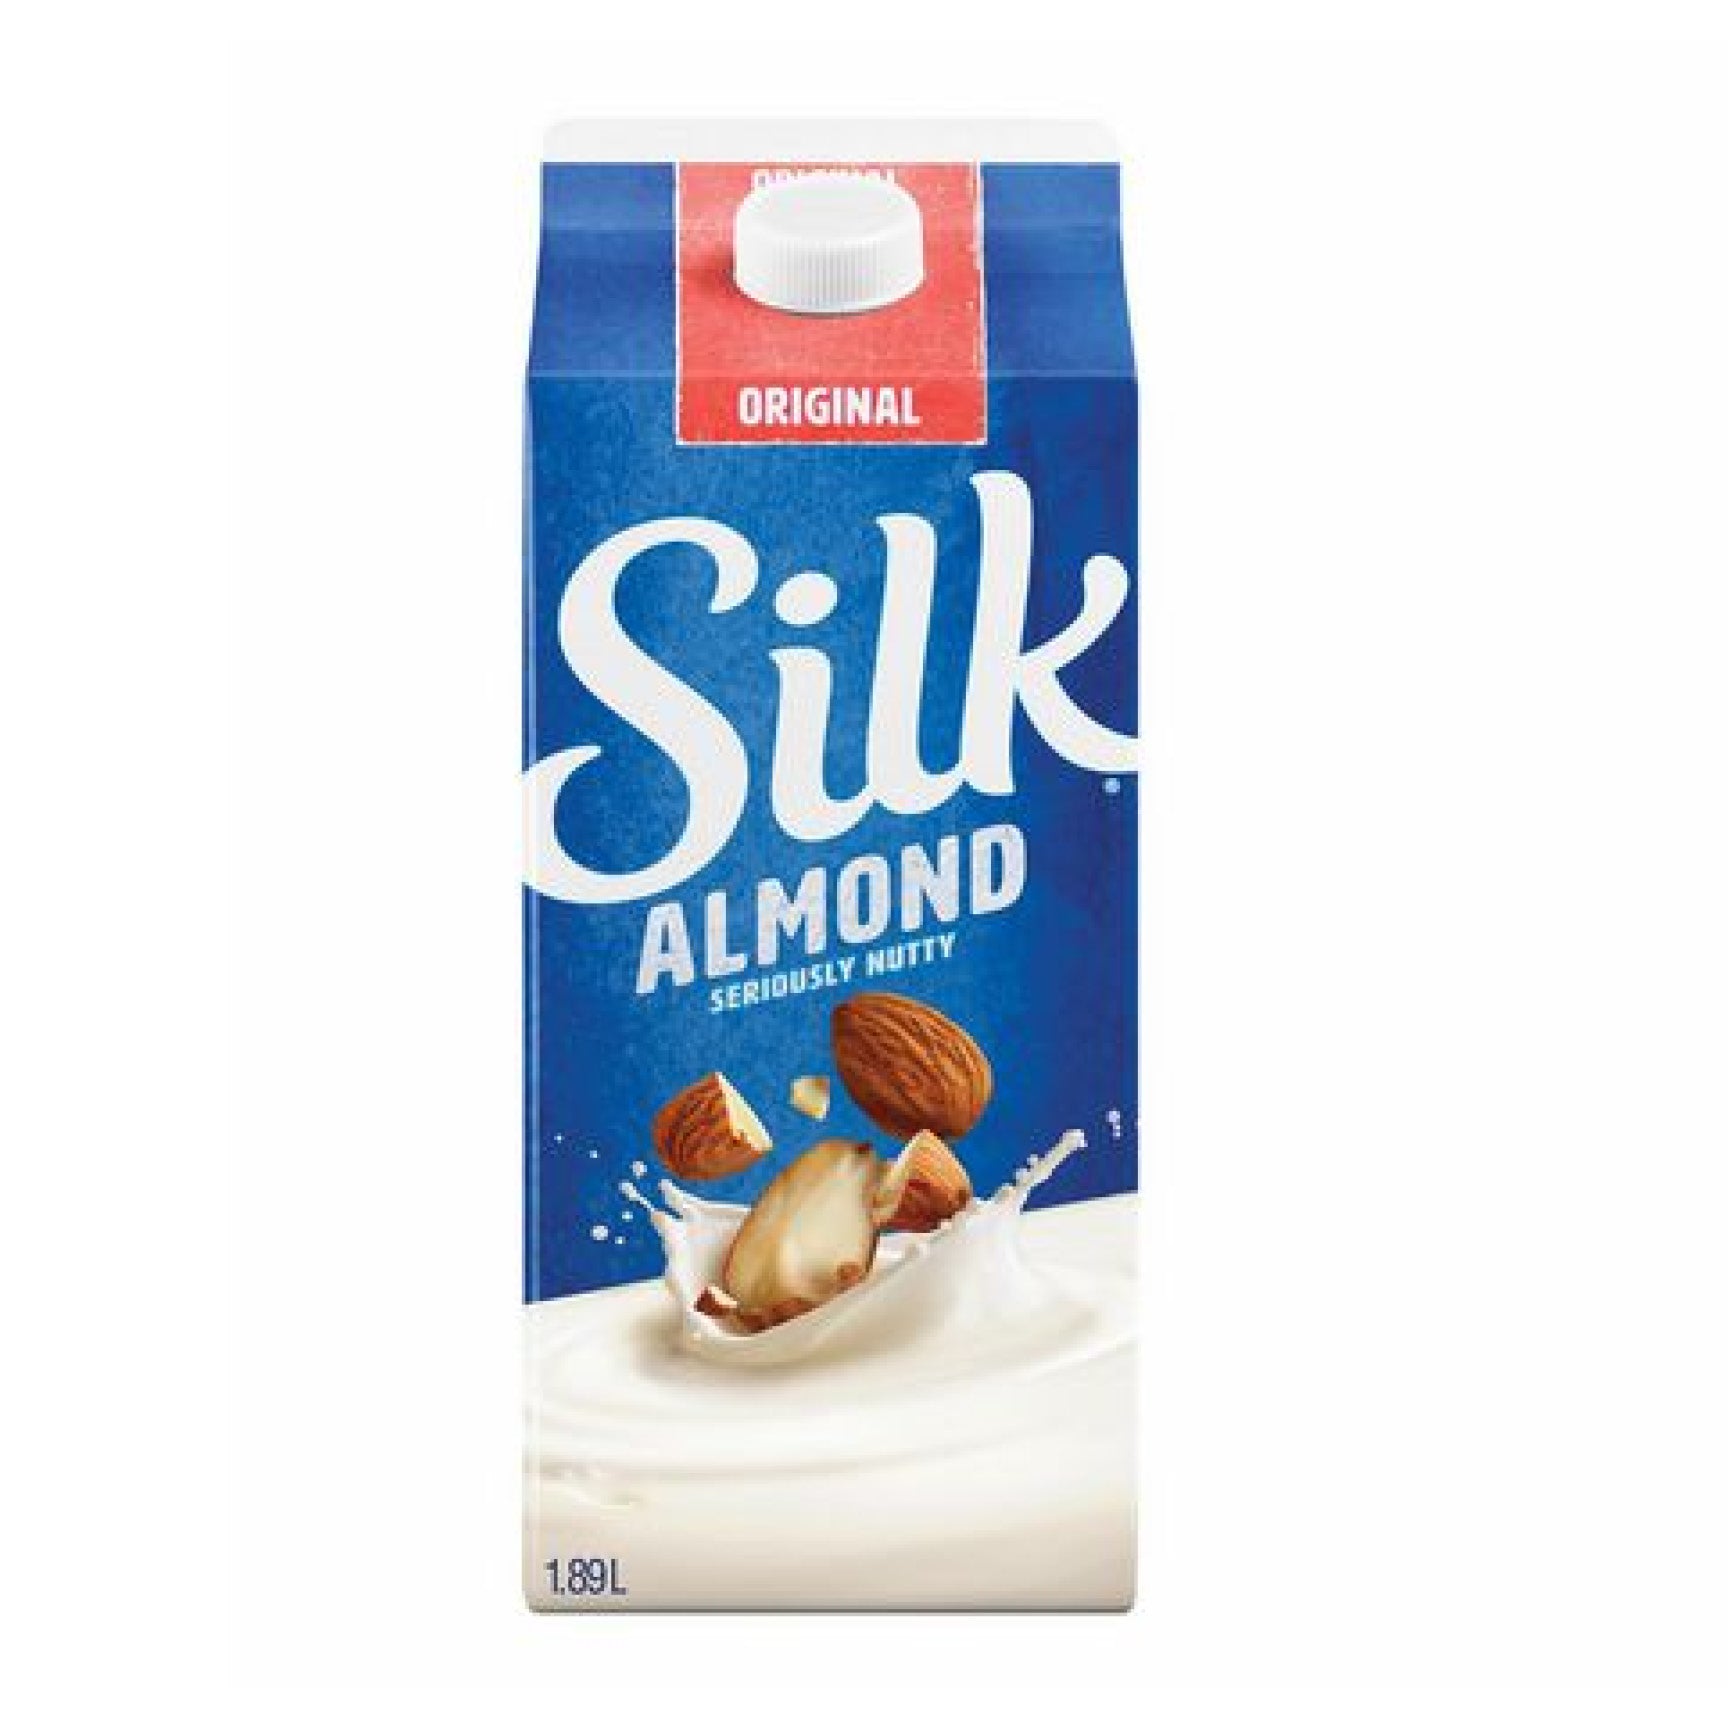 Silk Almond Milk Beverage, Original, 1.89L